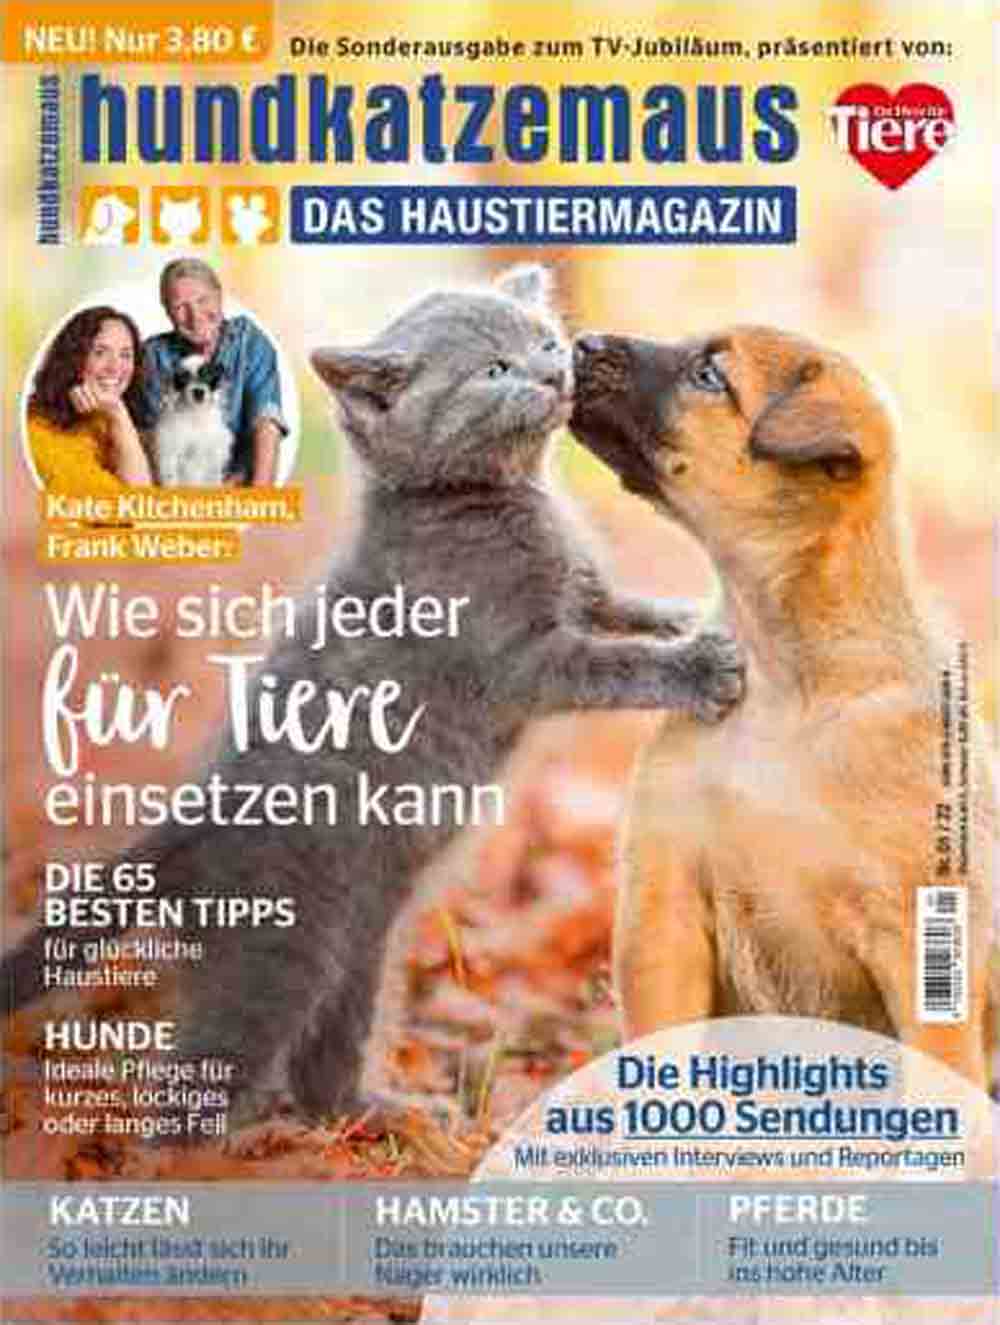 »Vox« Haustiermagazin feiert Jubiläum im TV und mit neuer Zeitschrift: 20 Jahre »hundkatzemaus« in Gütersloh